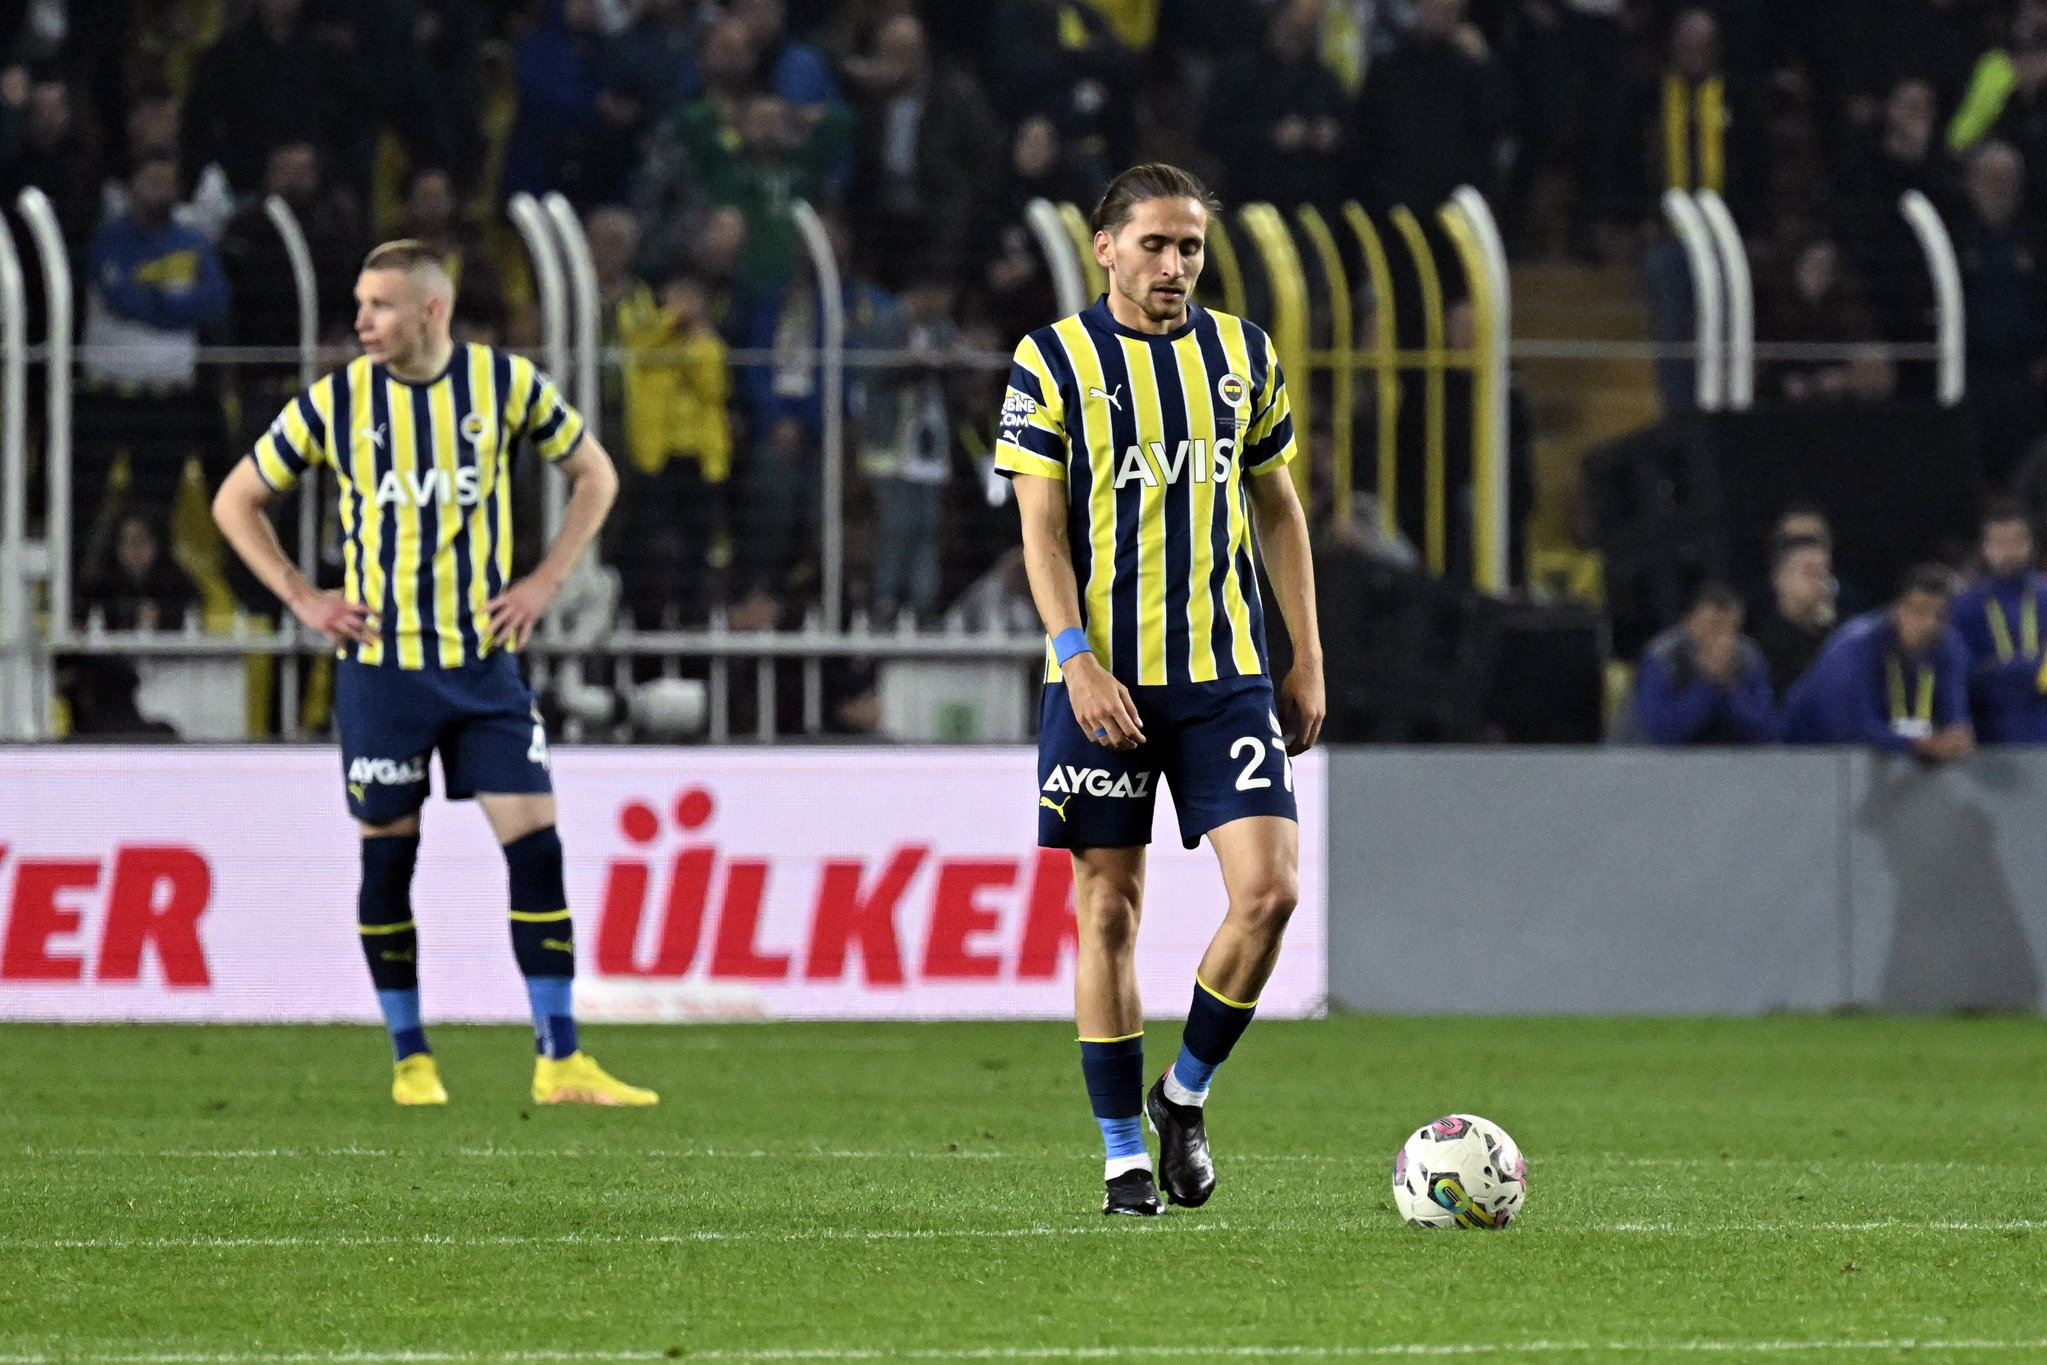 Miguel Crespo’dan transfer itirafı! Fenerbahçe’ye dönecek mi?